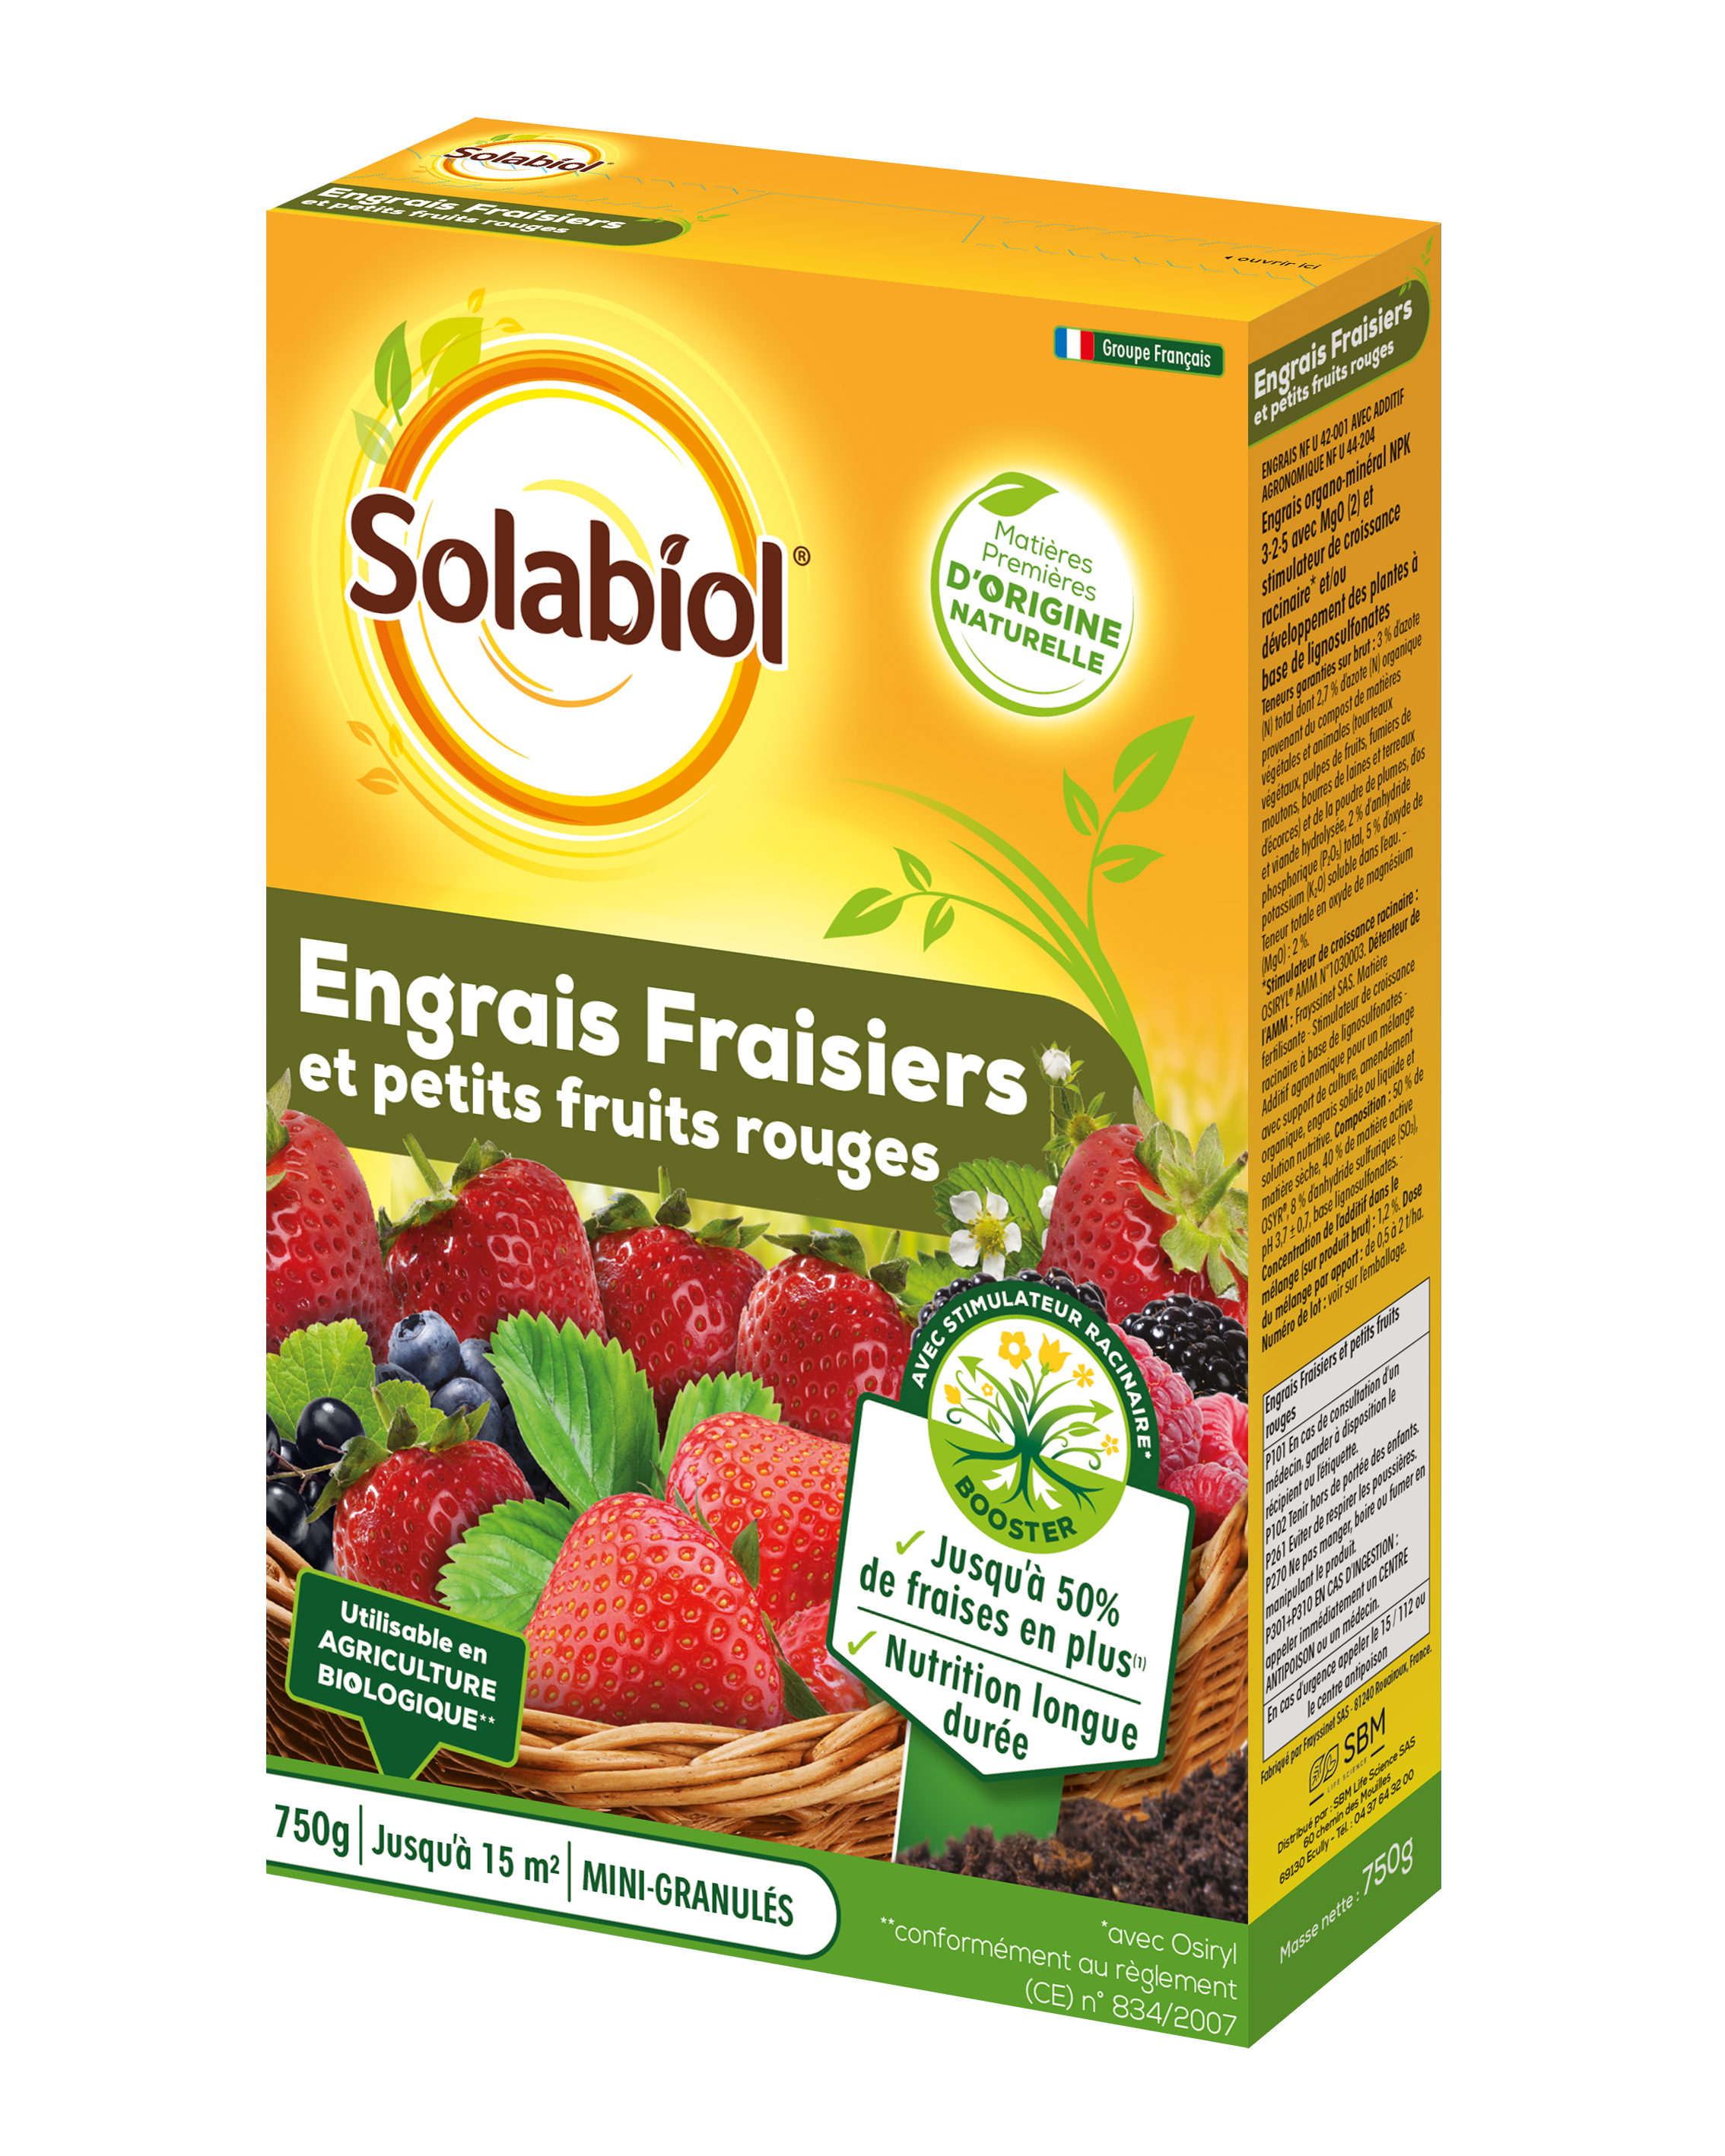 Sofray750 | engrais fraisiers et petits fruits | 750g |stimulateur de